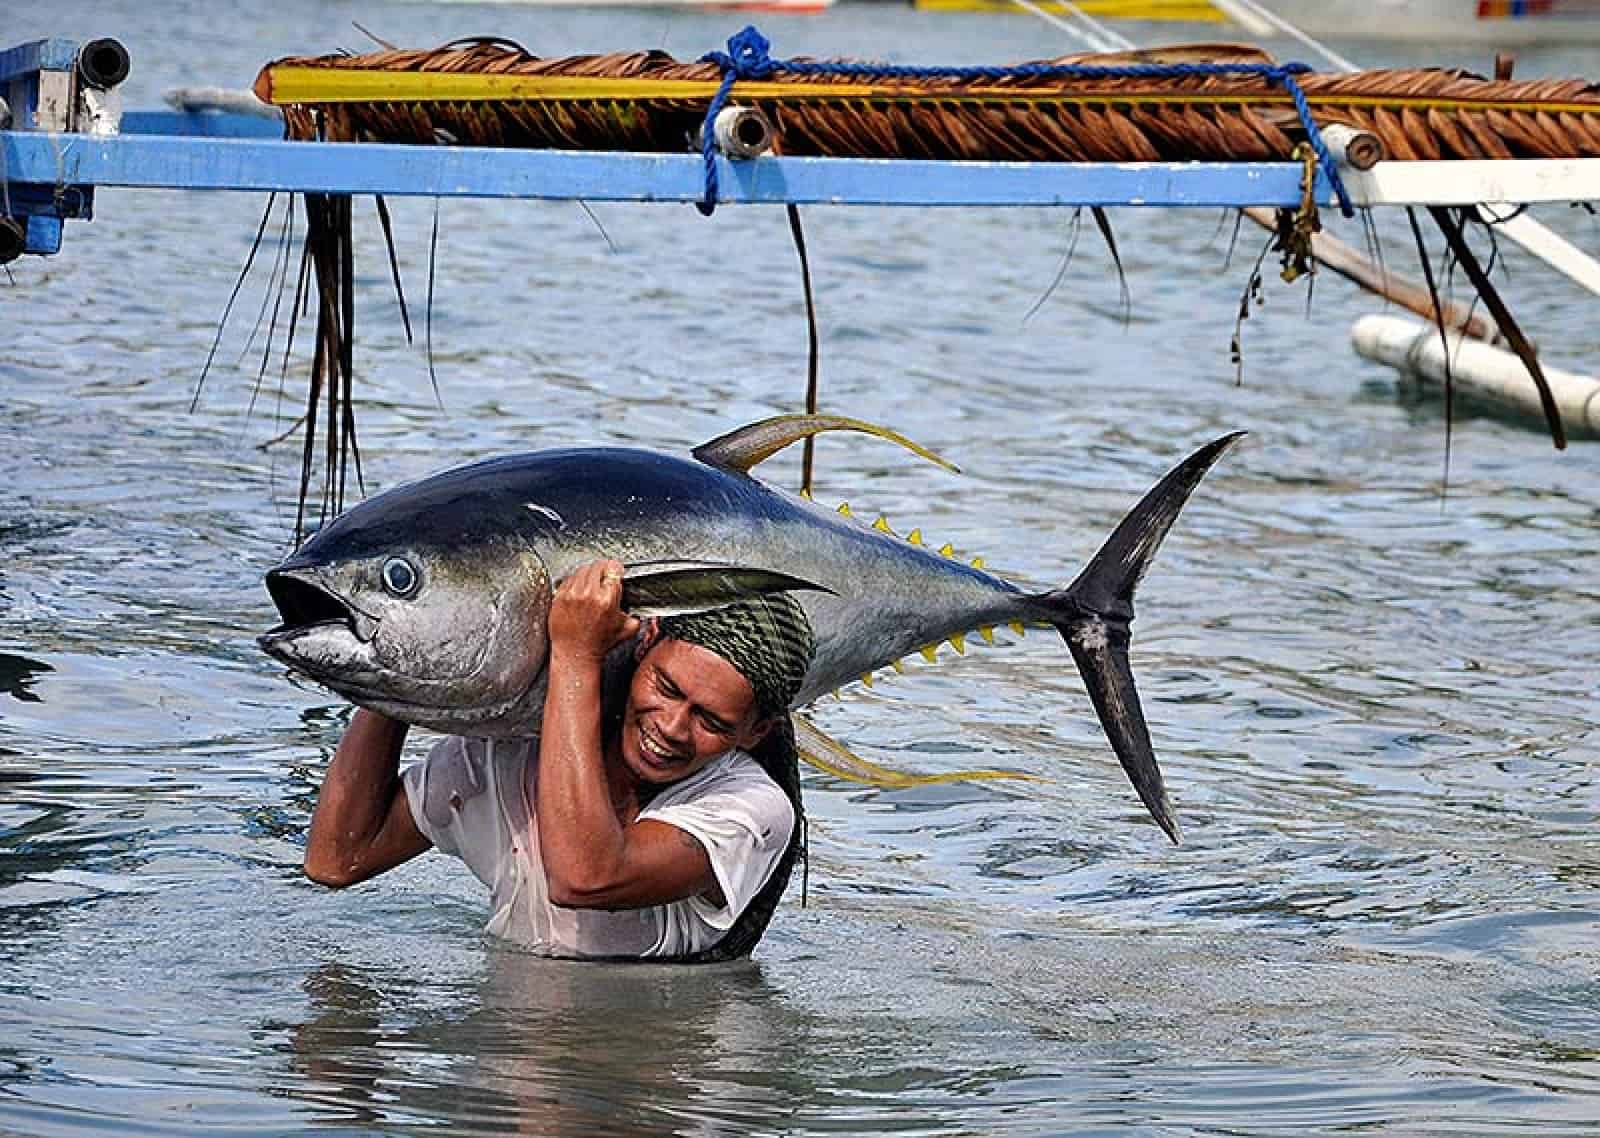 Thunfischfang auf den Philippinen, © by Gregg Yan / WWF